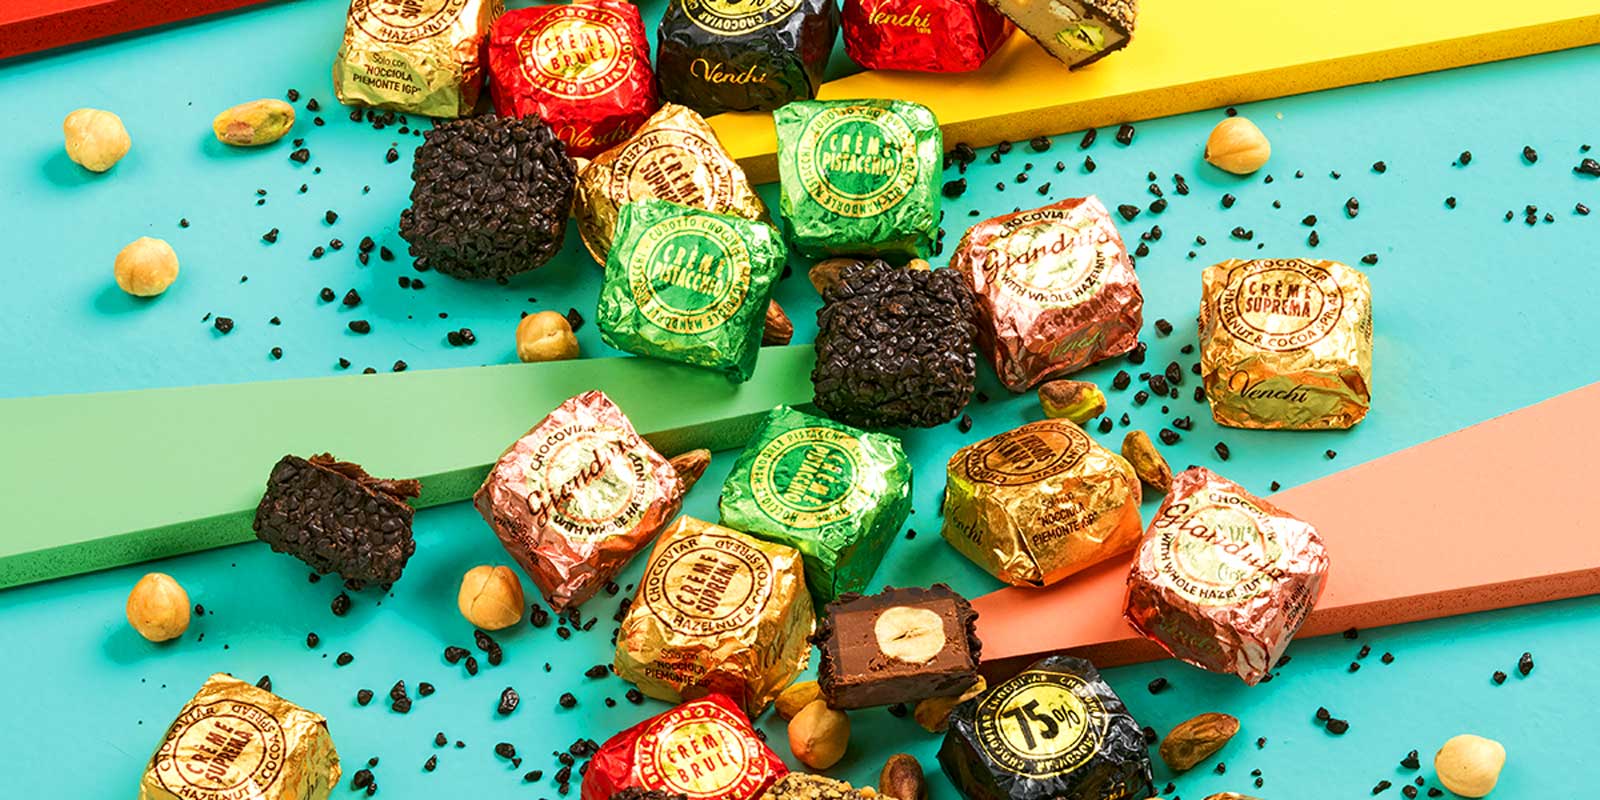 Venchi-sjokolader og praliner fra Piemonte Deilige, hjemmelagde og naturlige oppskrifter designet for a hjelpe deg a nyte.
Siden 1878 har vi tilbudt oeyeblikk av glede hver dag i perfekt italiensk stil, vi tenker pa ditt velvaere.